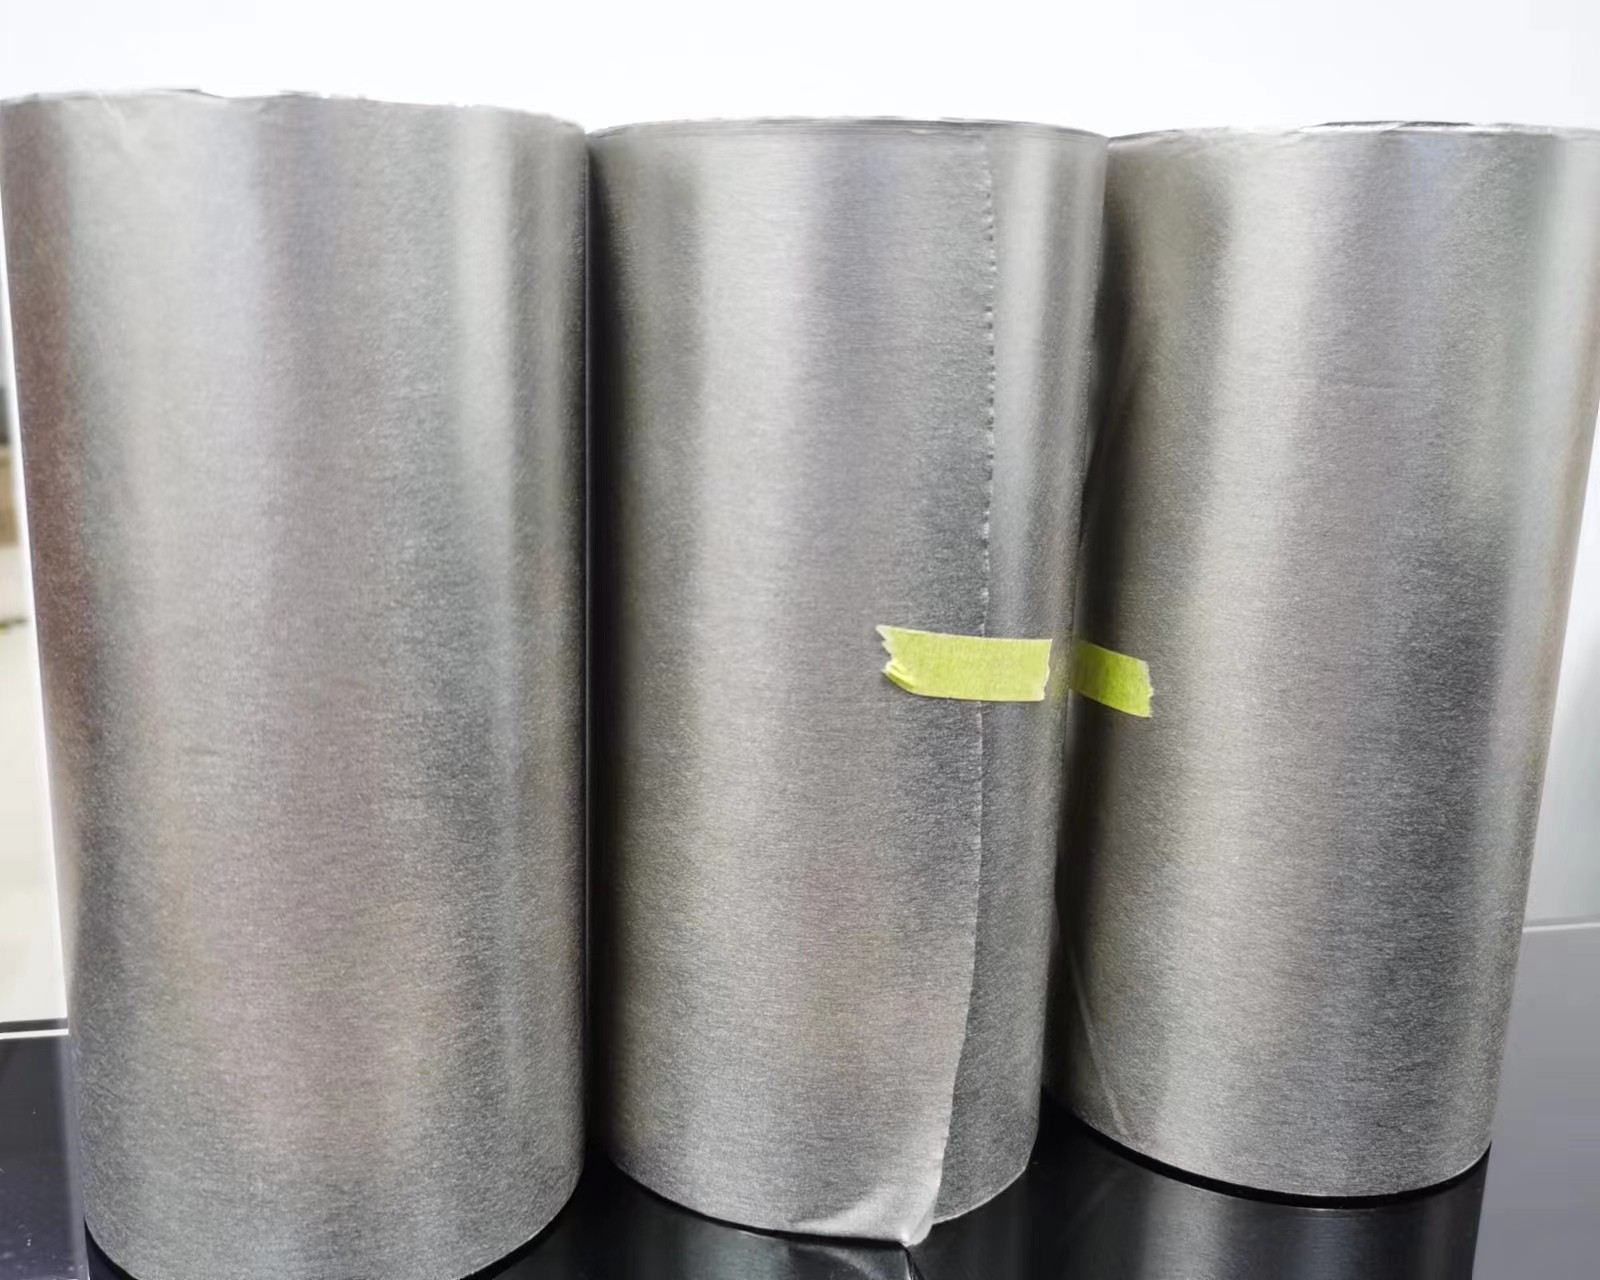 供应超导极薄导电布 超导极薄导电布价格 深圳超导极薄导电布价格 SI-21EMI